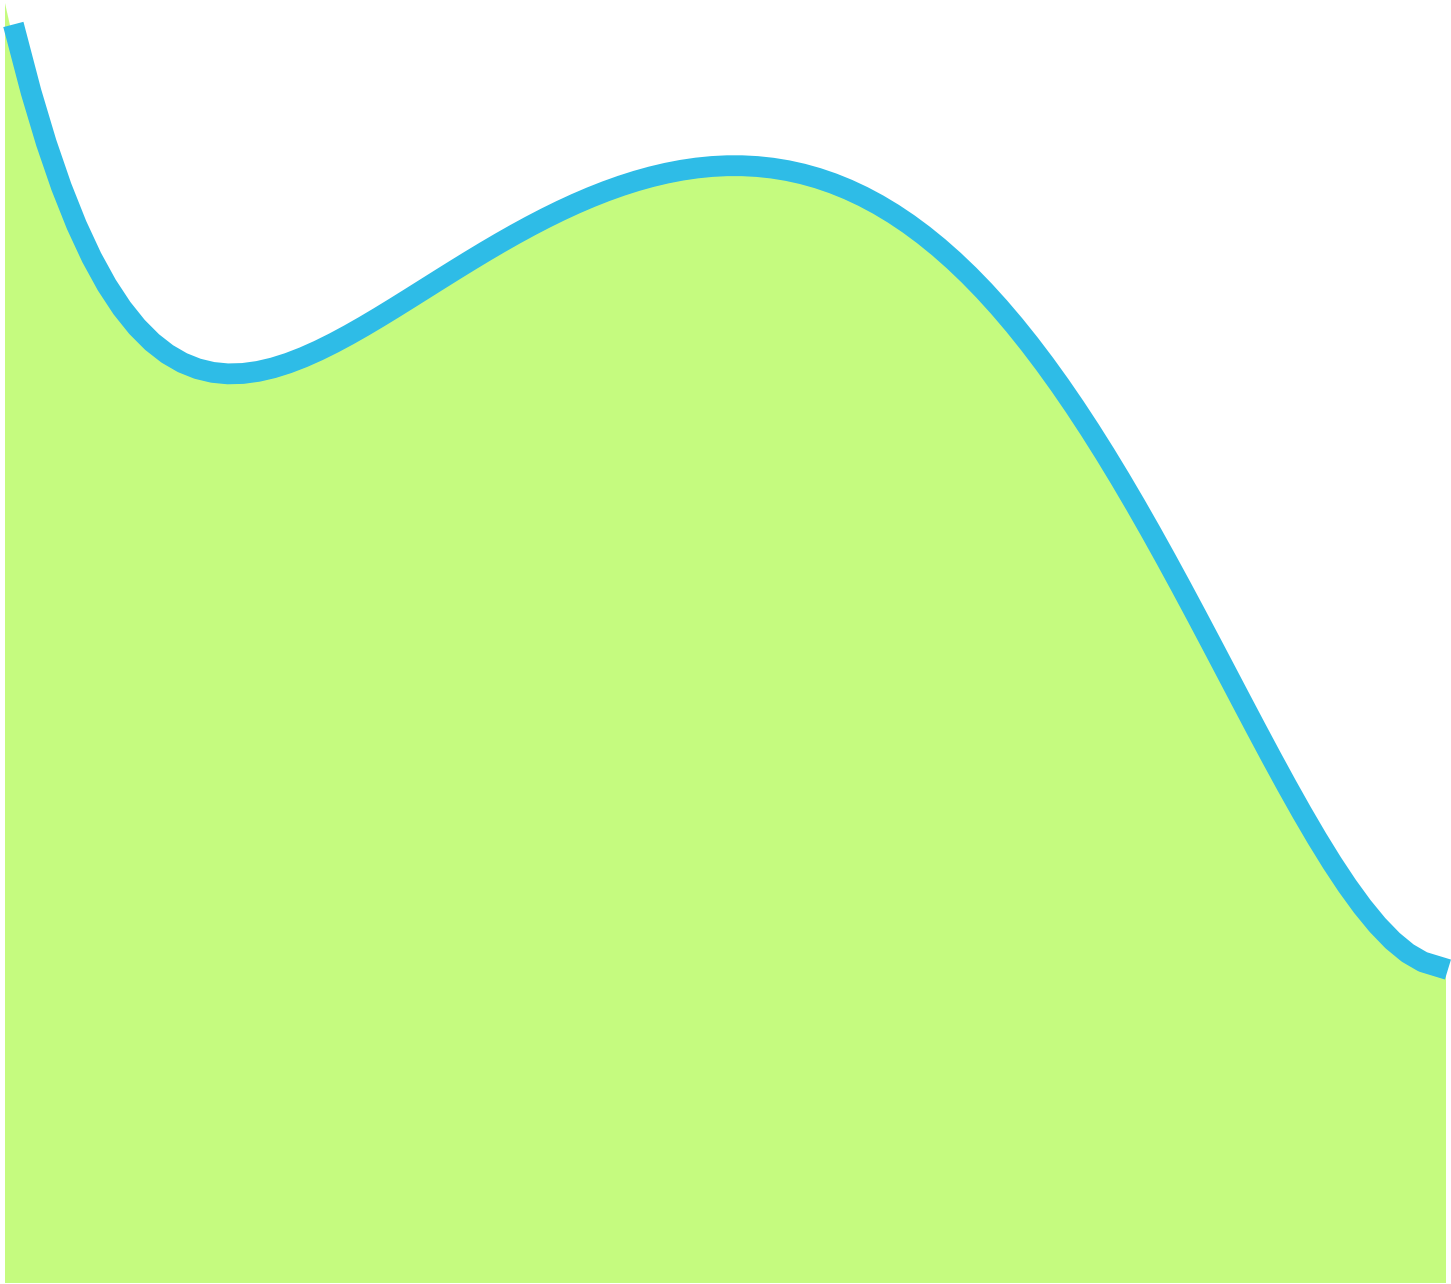 Figure 5: Area under the curve.